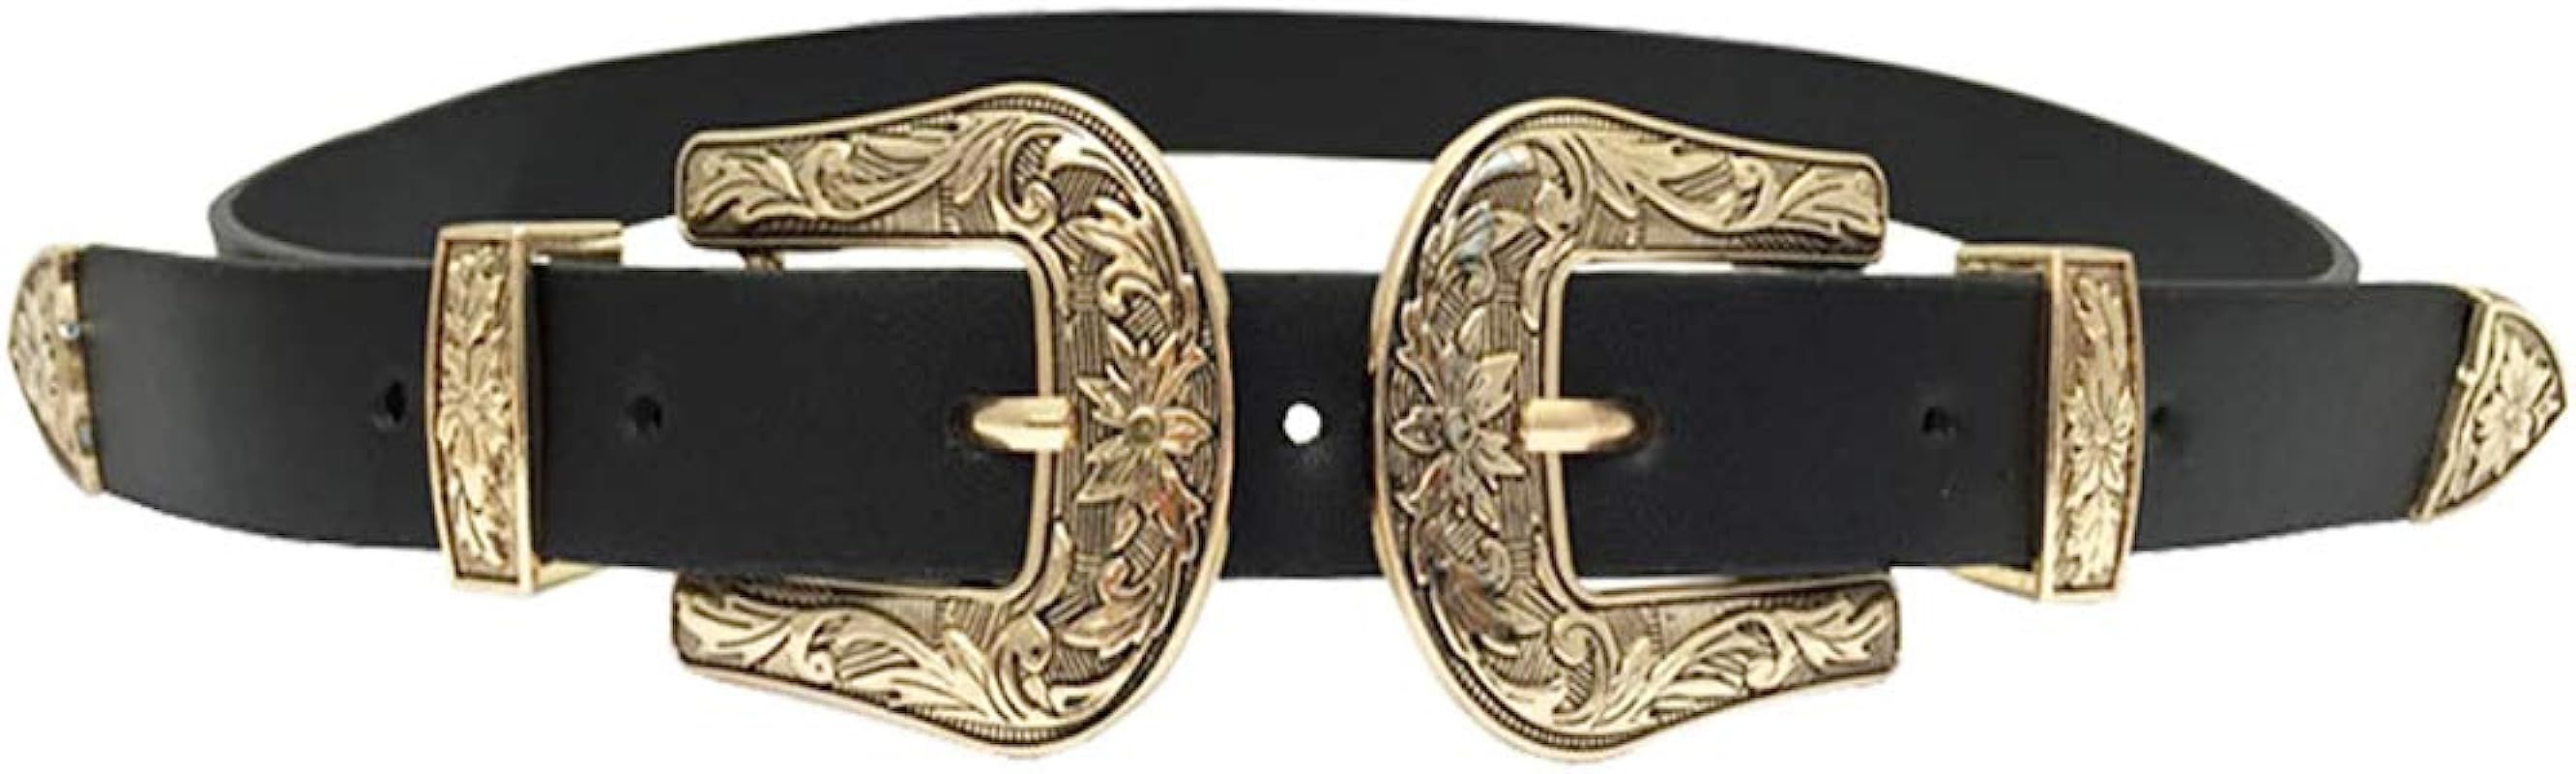 Women's Belt Western Vintage Style Genuine Leather Belt Two Buckles Waist Belts for Jeans Dress P... | Amazon (US)